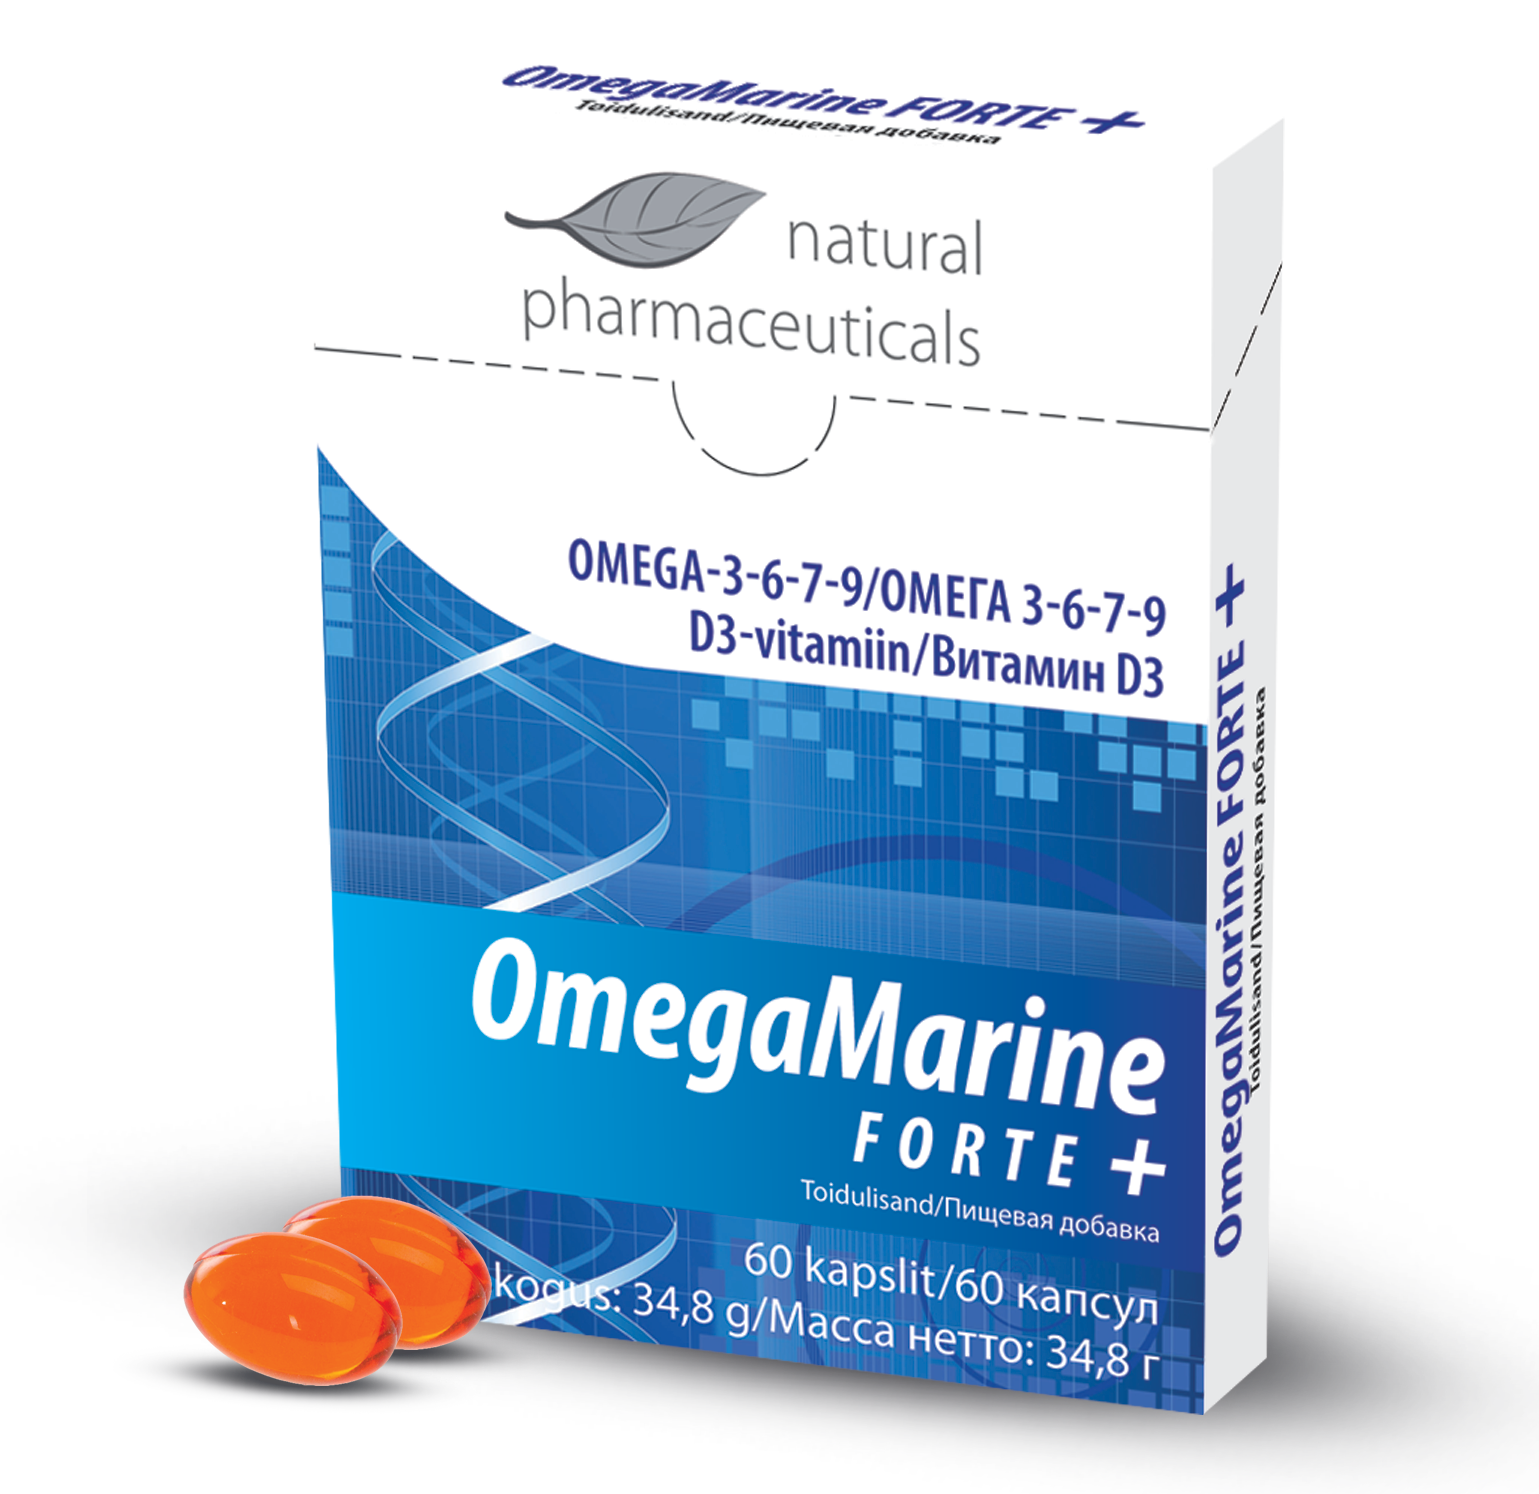 OmegaMarine FORTE+, 60 kapslit